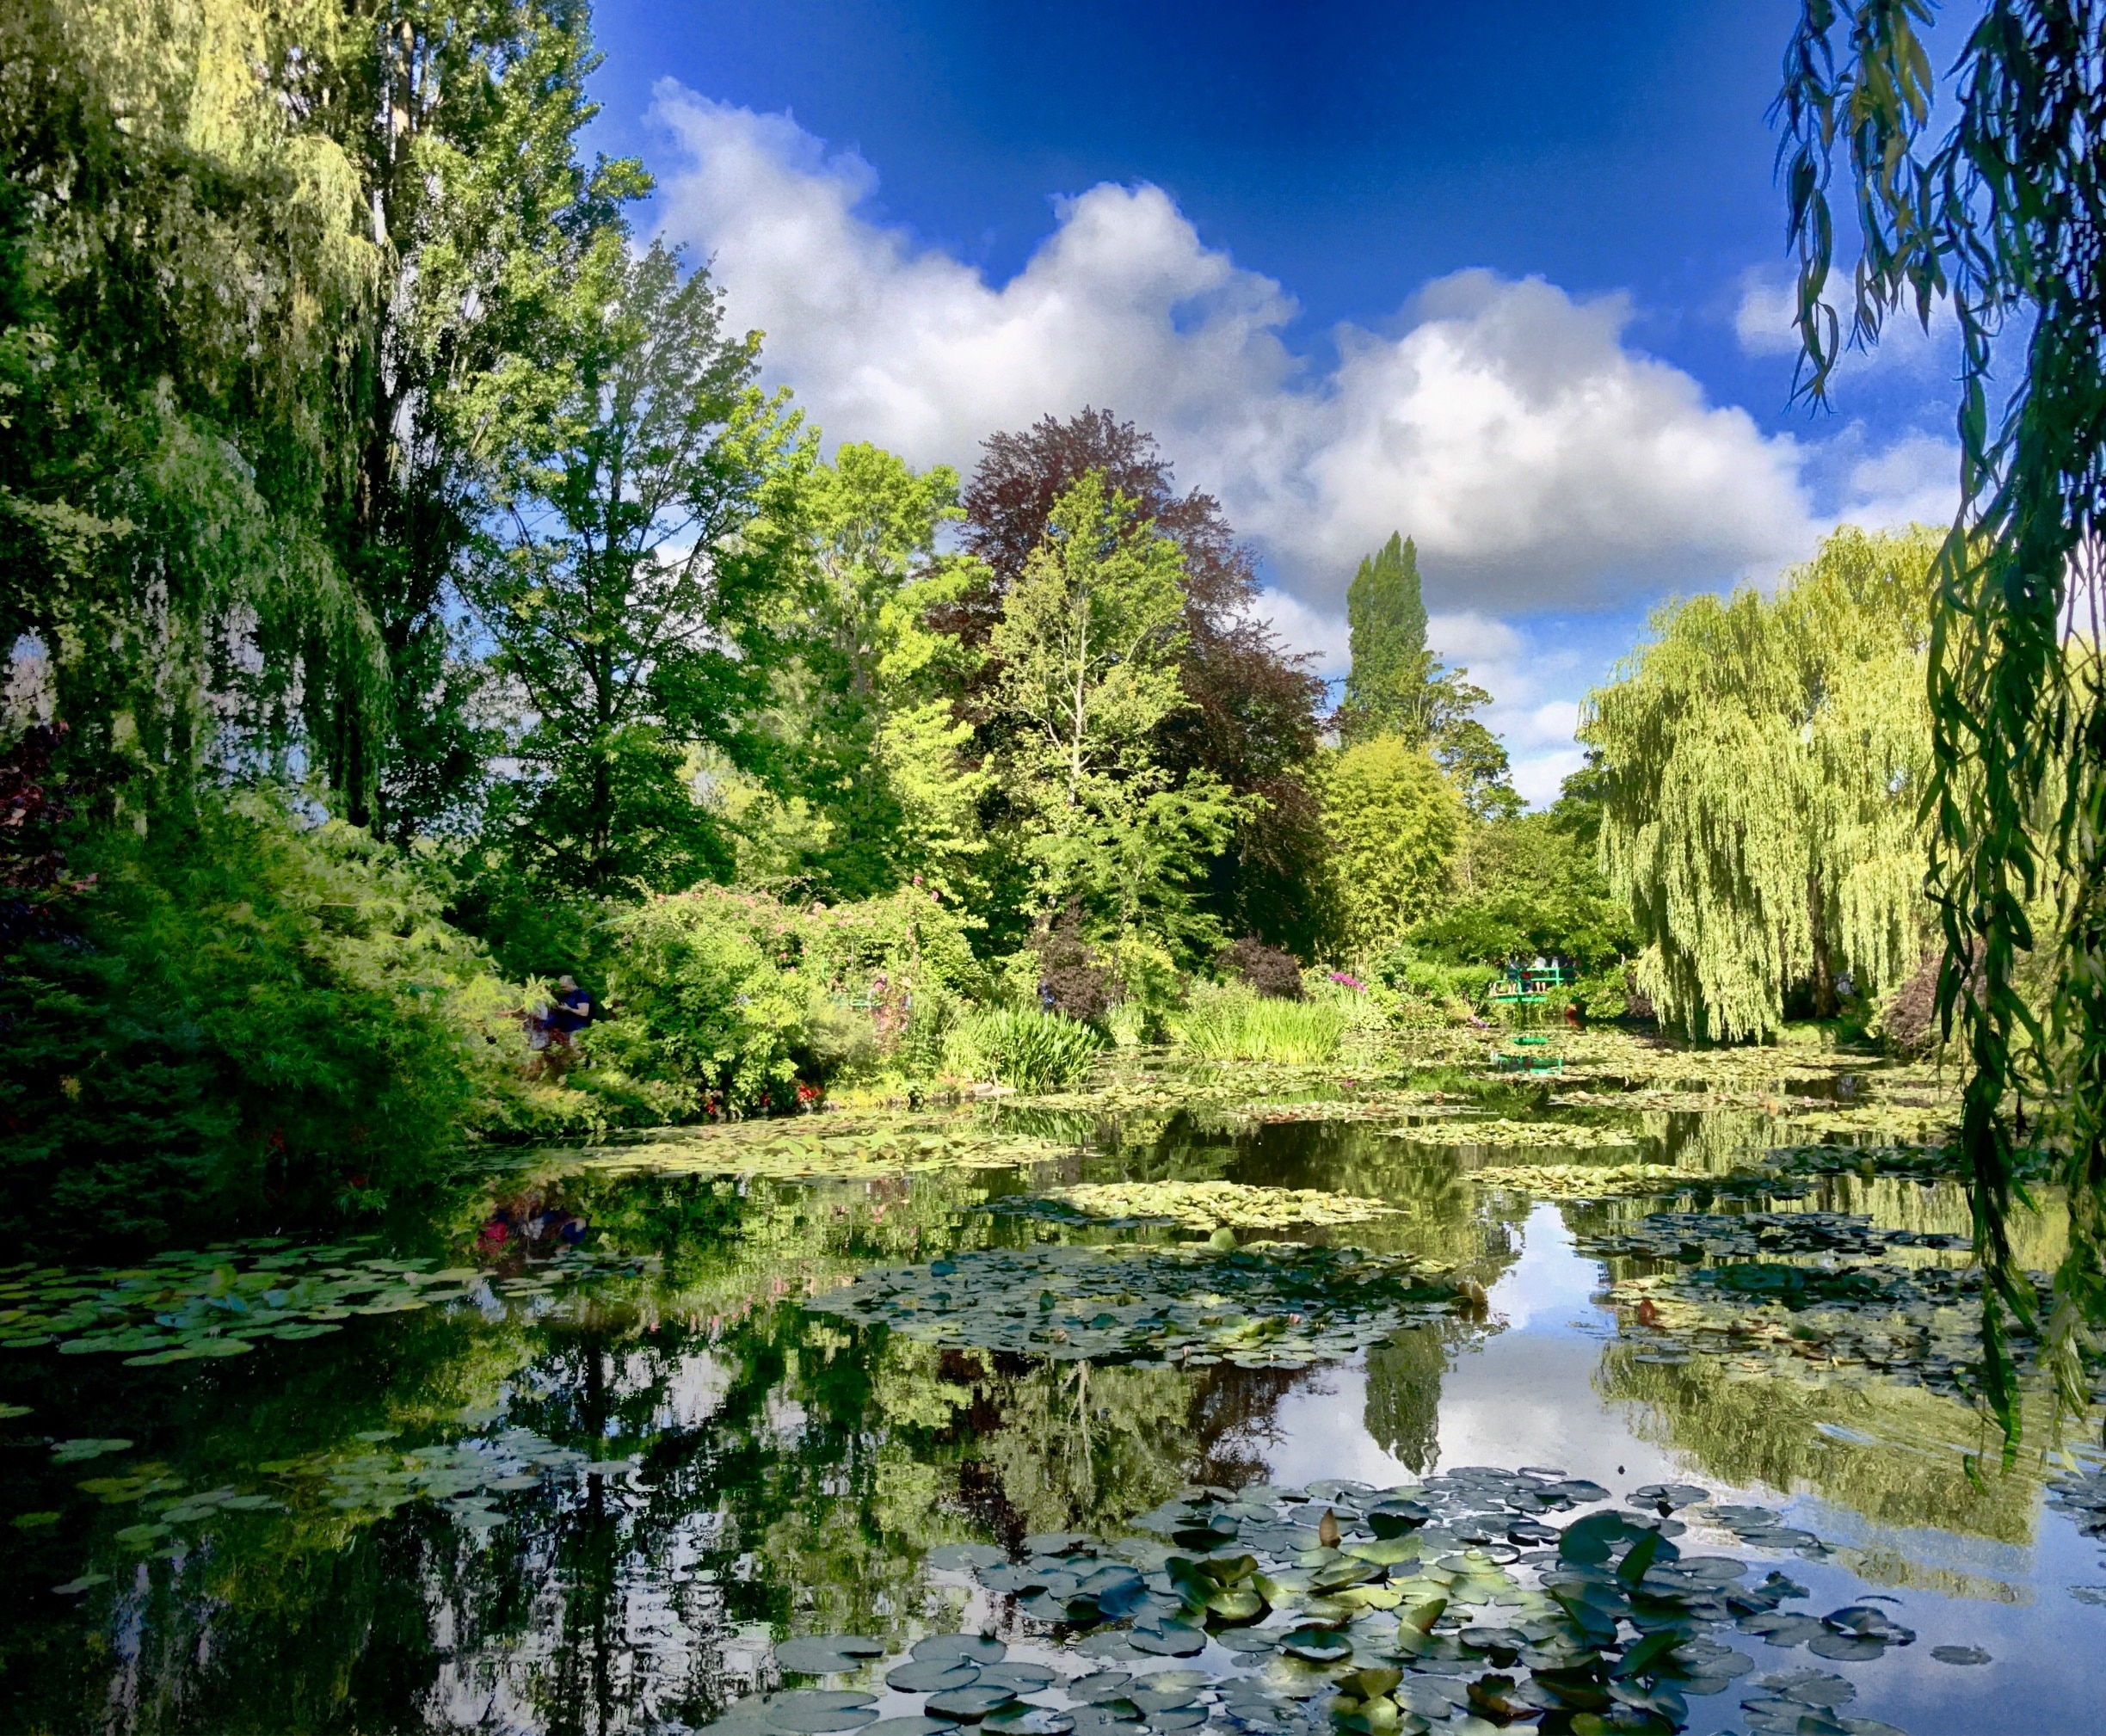 Les jardins de Claude Monet à Giverny, Giverny, Eure (département), France